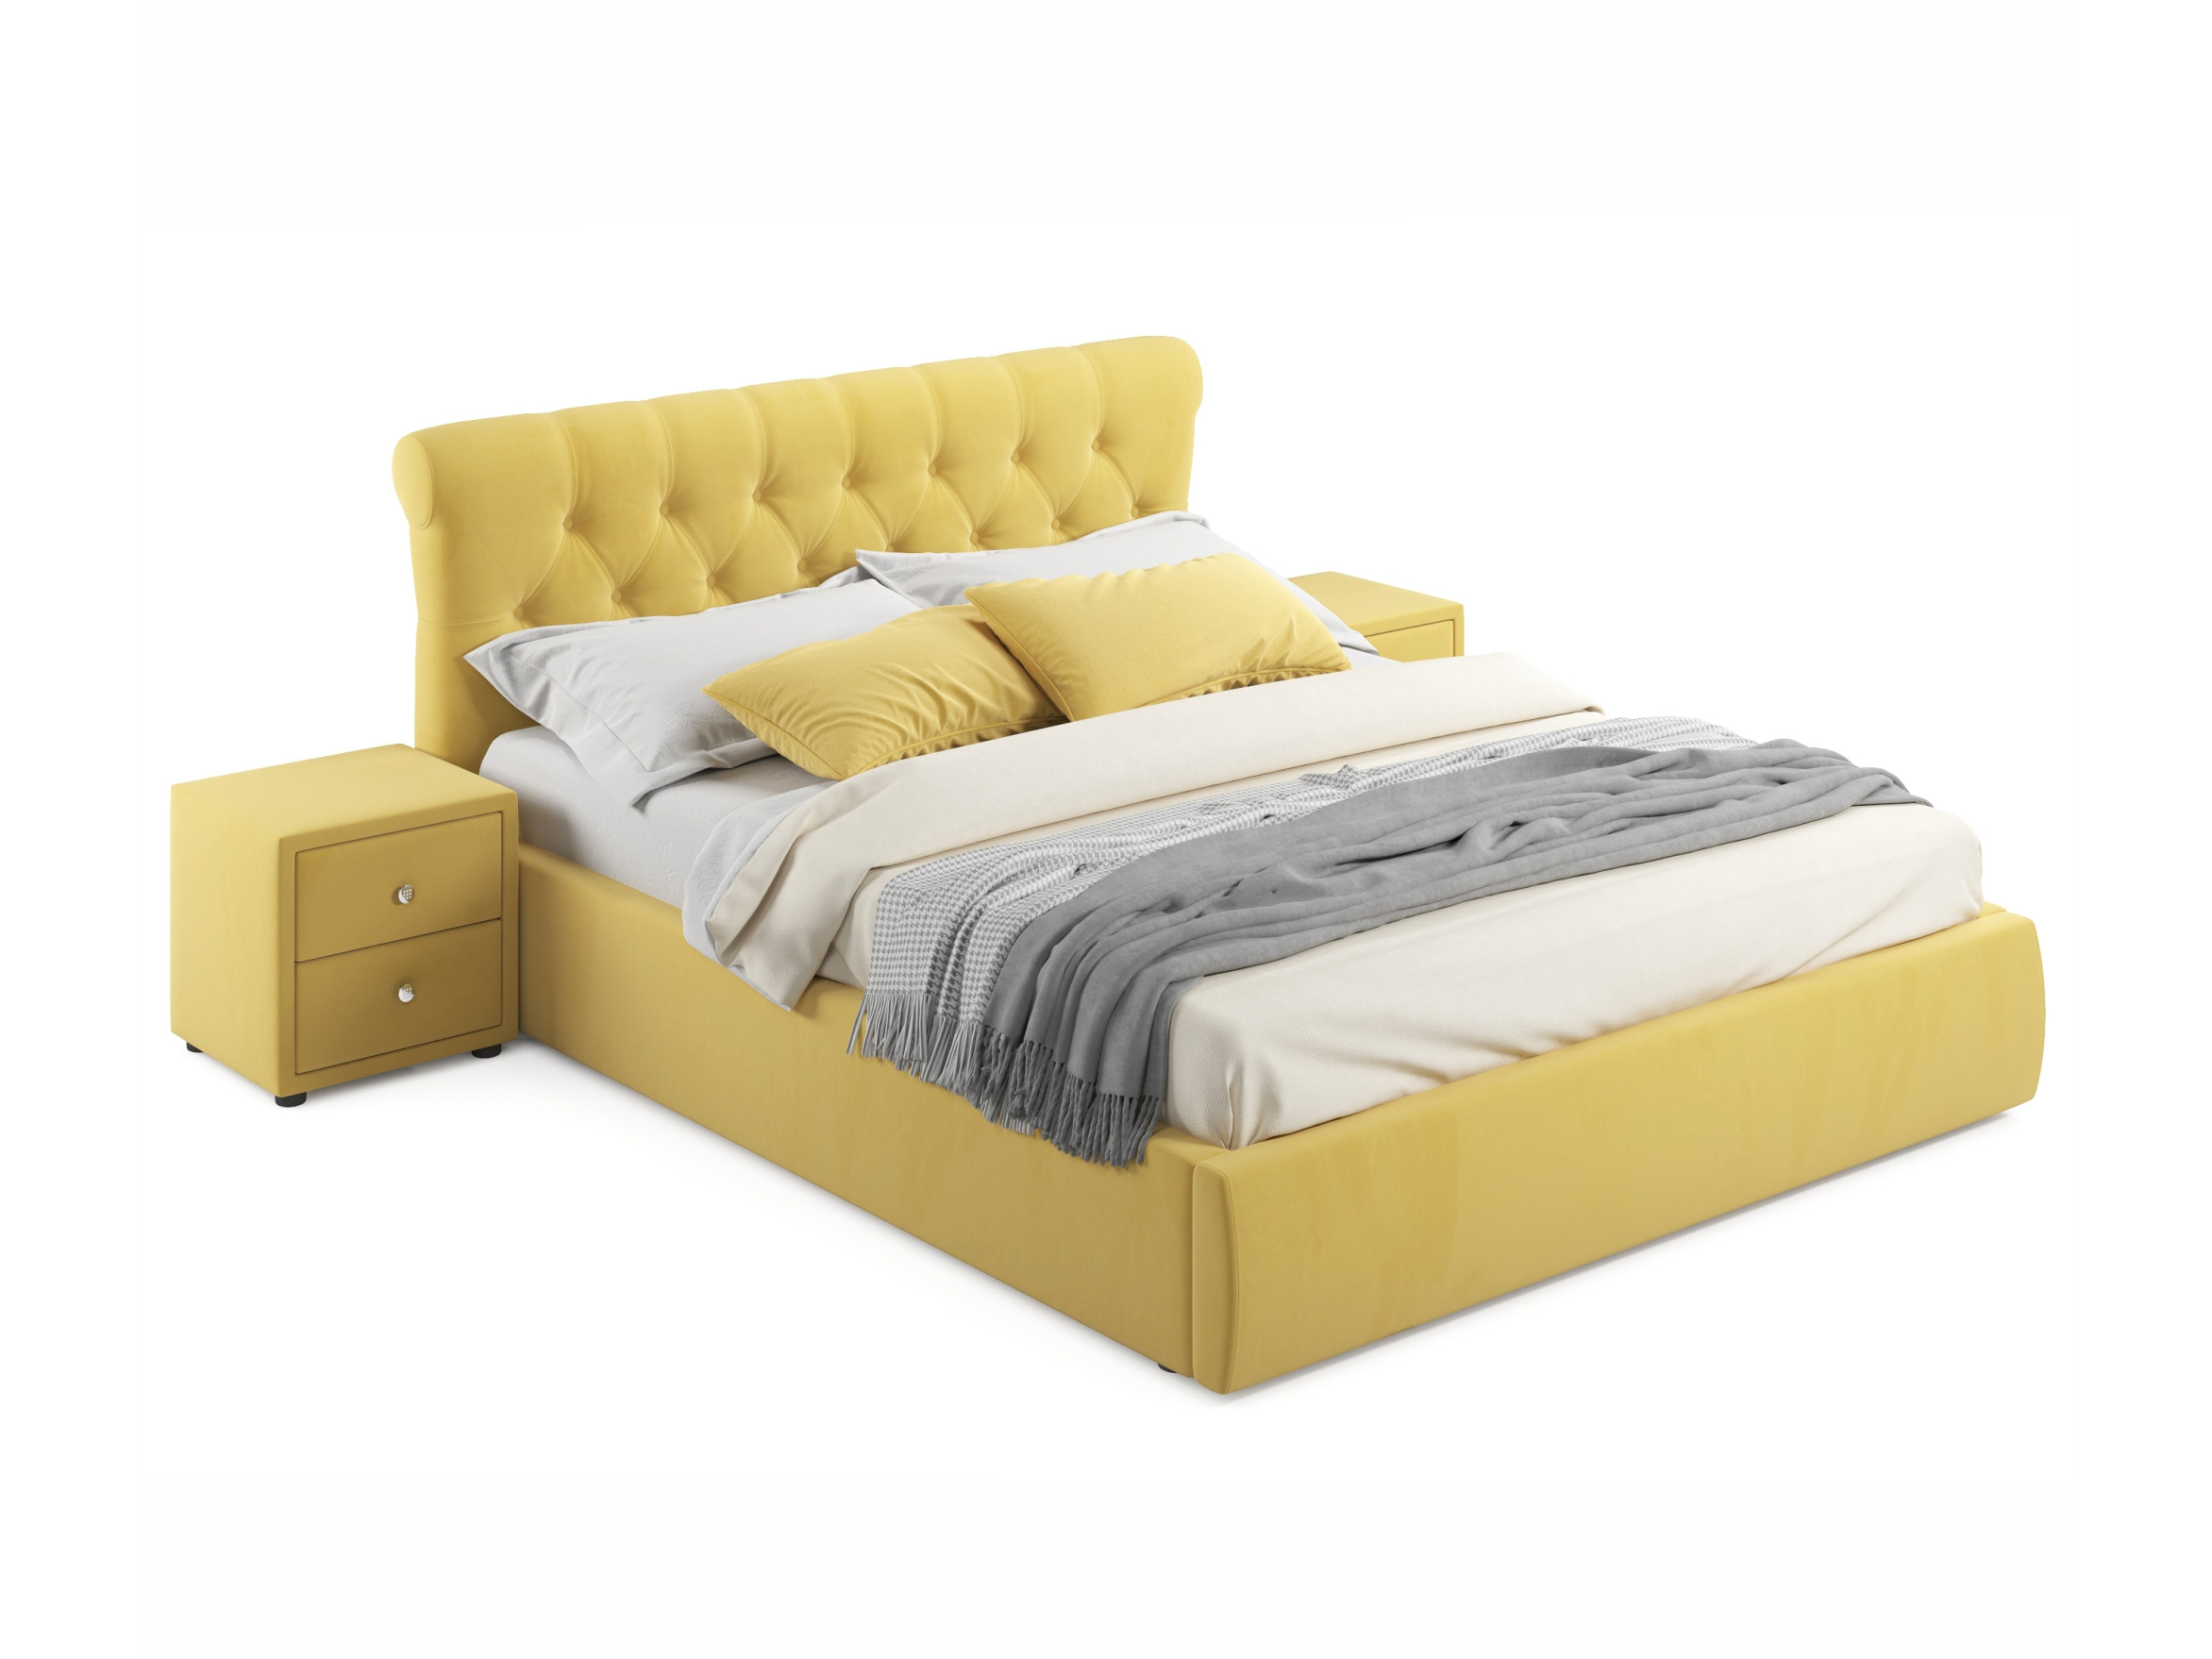 Мягкая кровать с тумбами Ameli 1600 желтая с подъемным механизмом желтый, Желтый, Велюр, ДСП мягкая кровать с тумбами verona 1600 желтая с подъемным механизмом желтый желтый велюр дсп